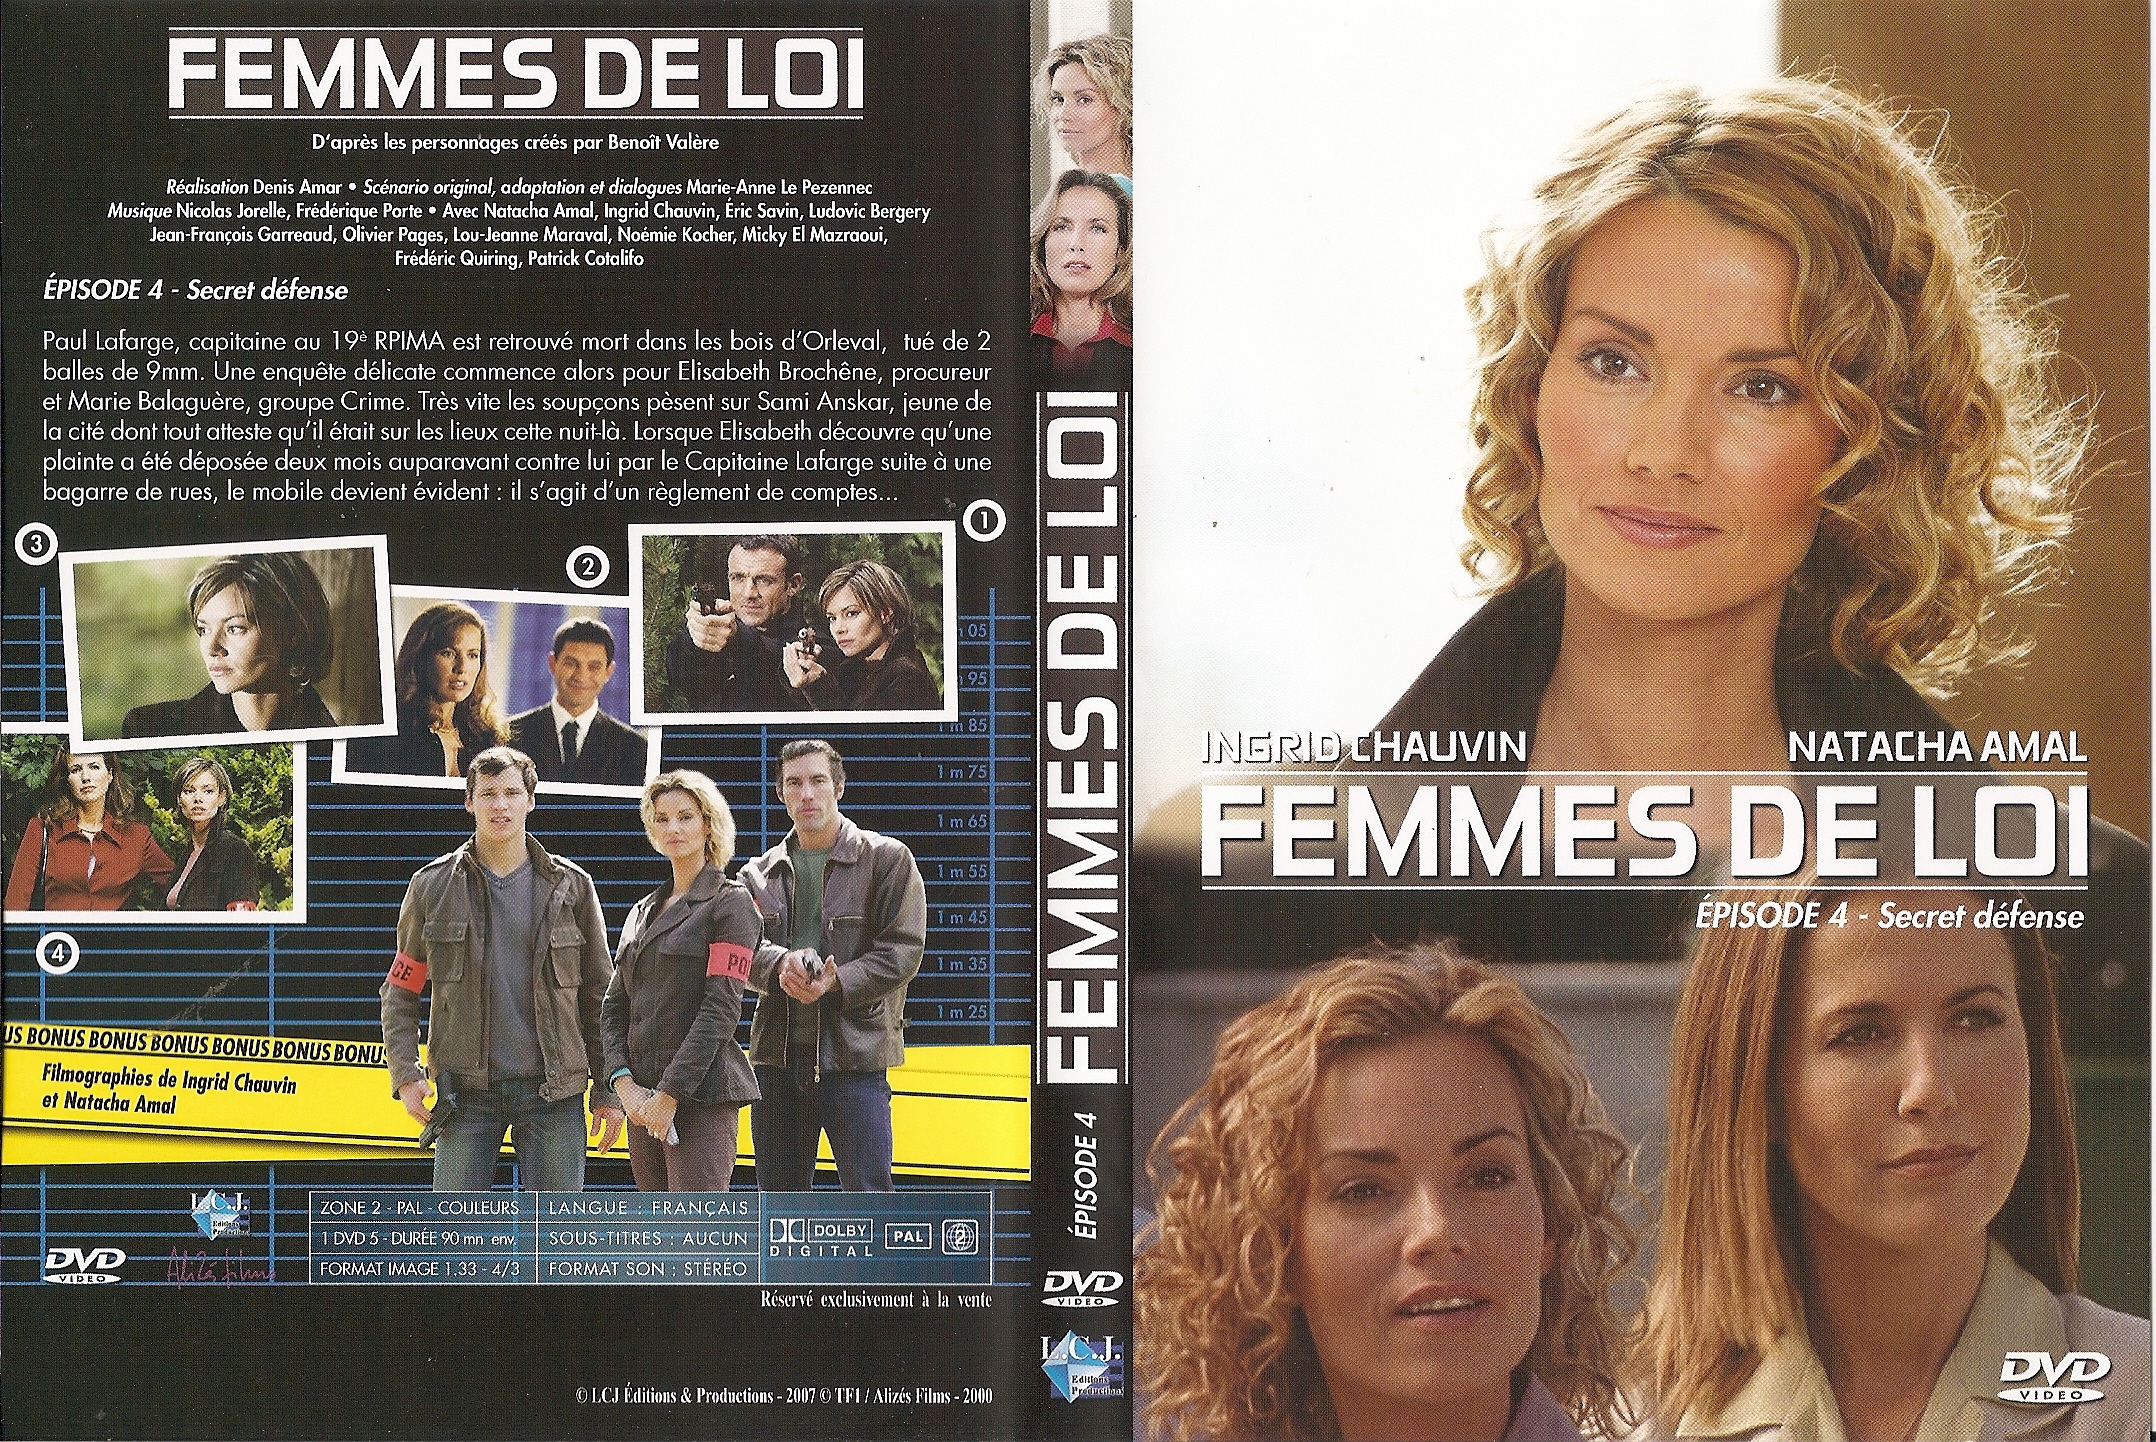 Jaquette DVD Femmes de loi  pisode 4